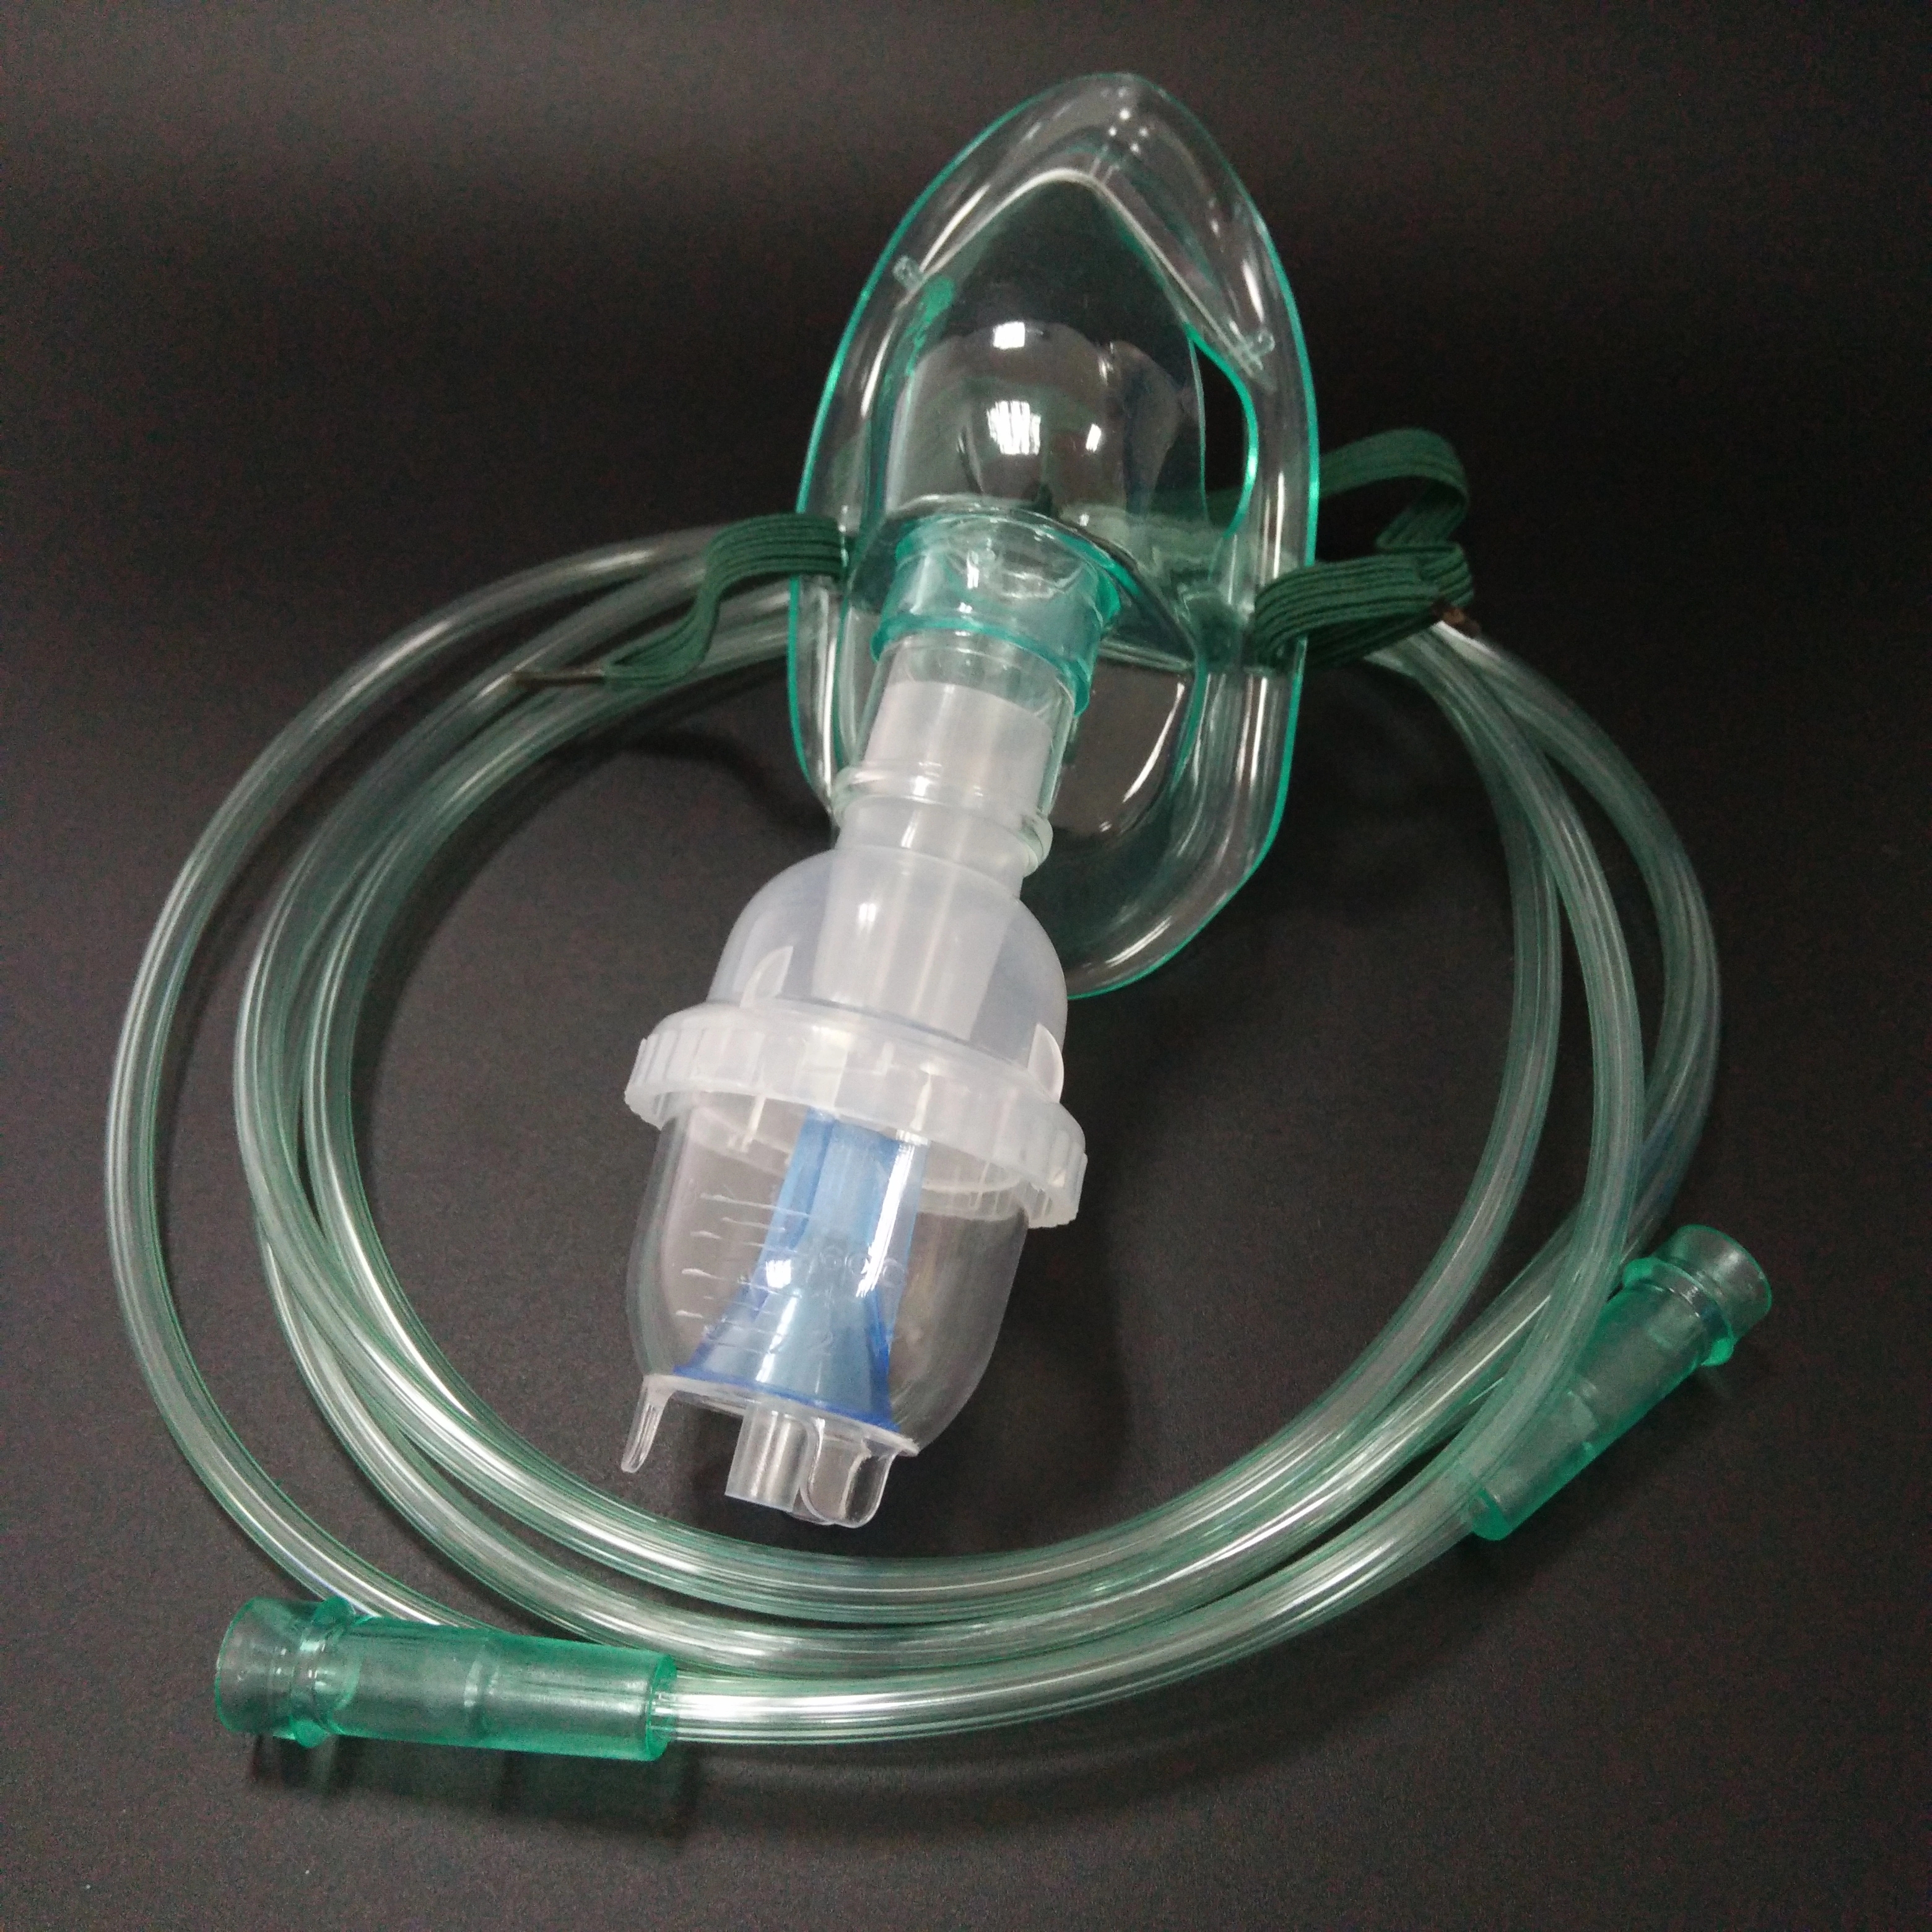 Màscara nebulitzadora d'un sol ús amb tub d'oxigen